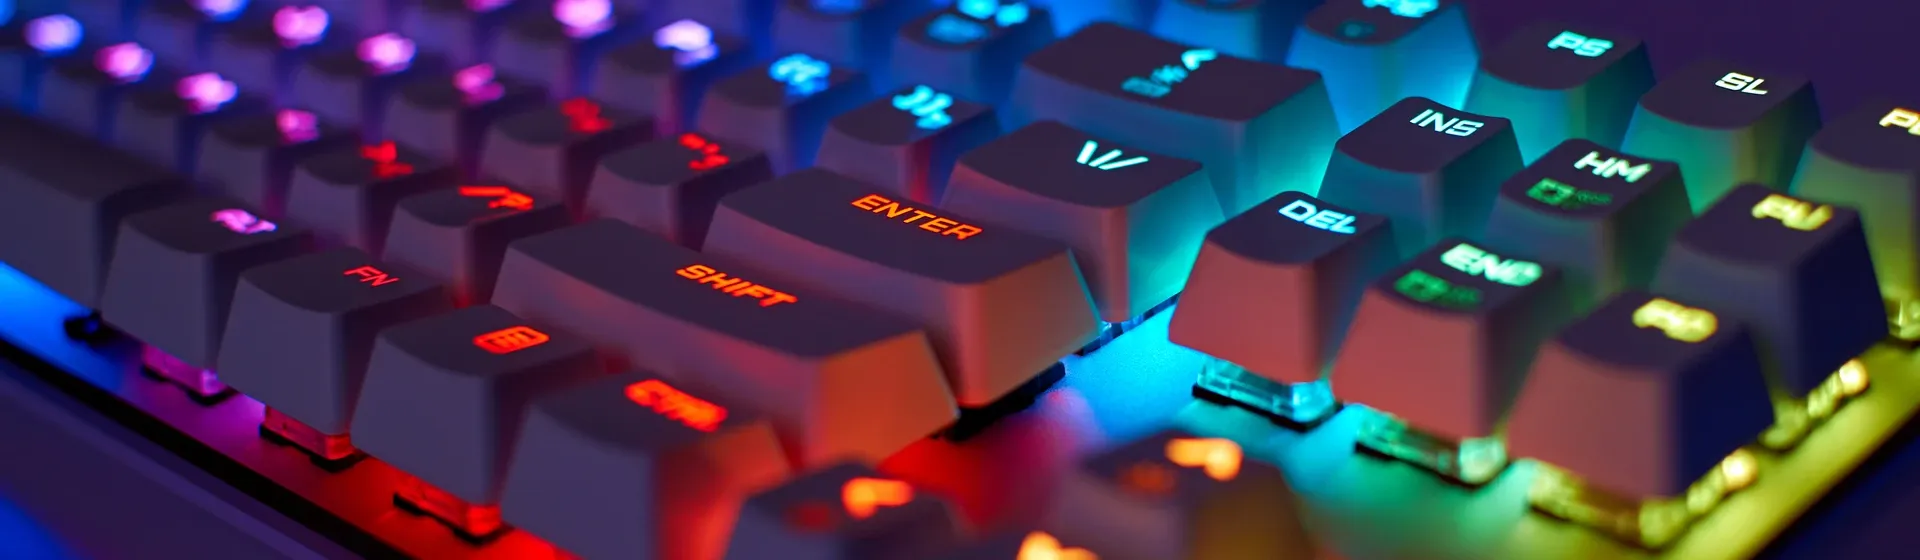 Um teclado preto em ambiente pouco iluminado visto de lado, cujas teclas têm iluminação multicolorida sob elas